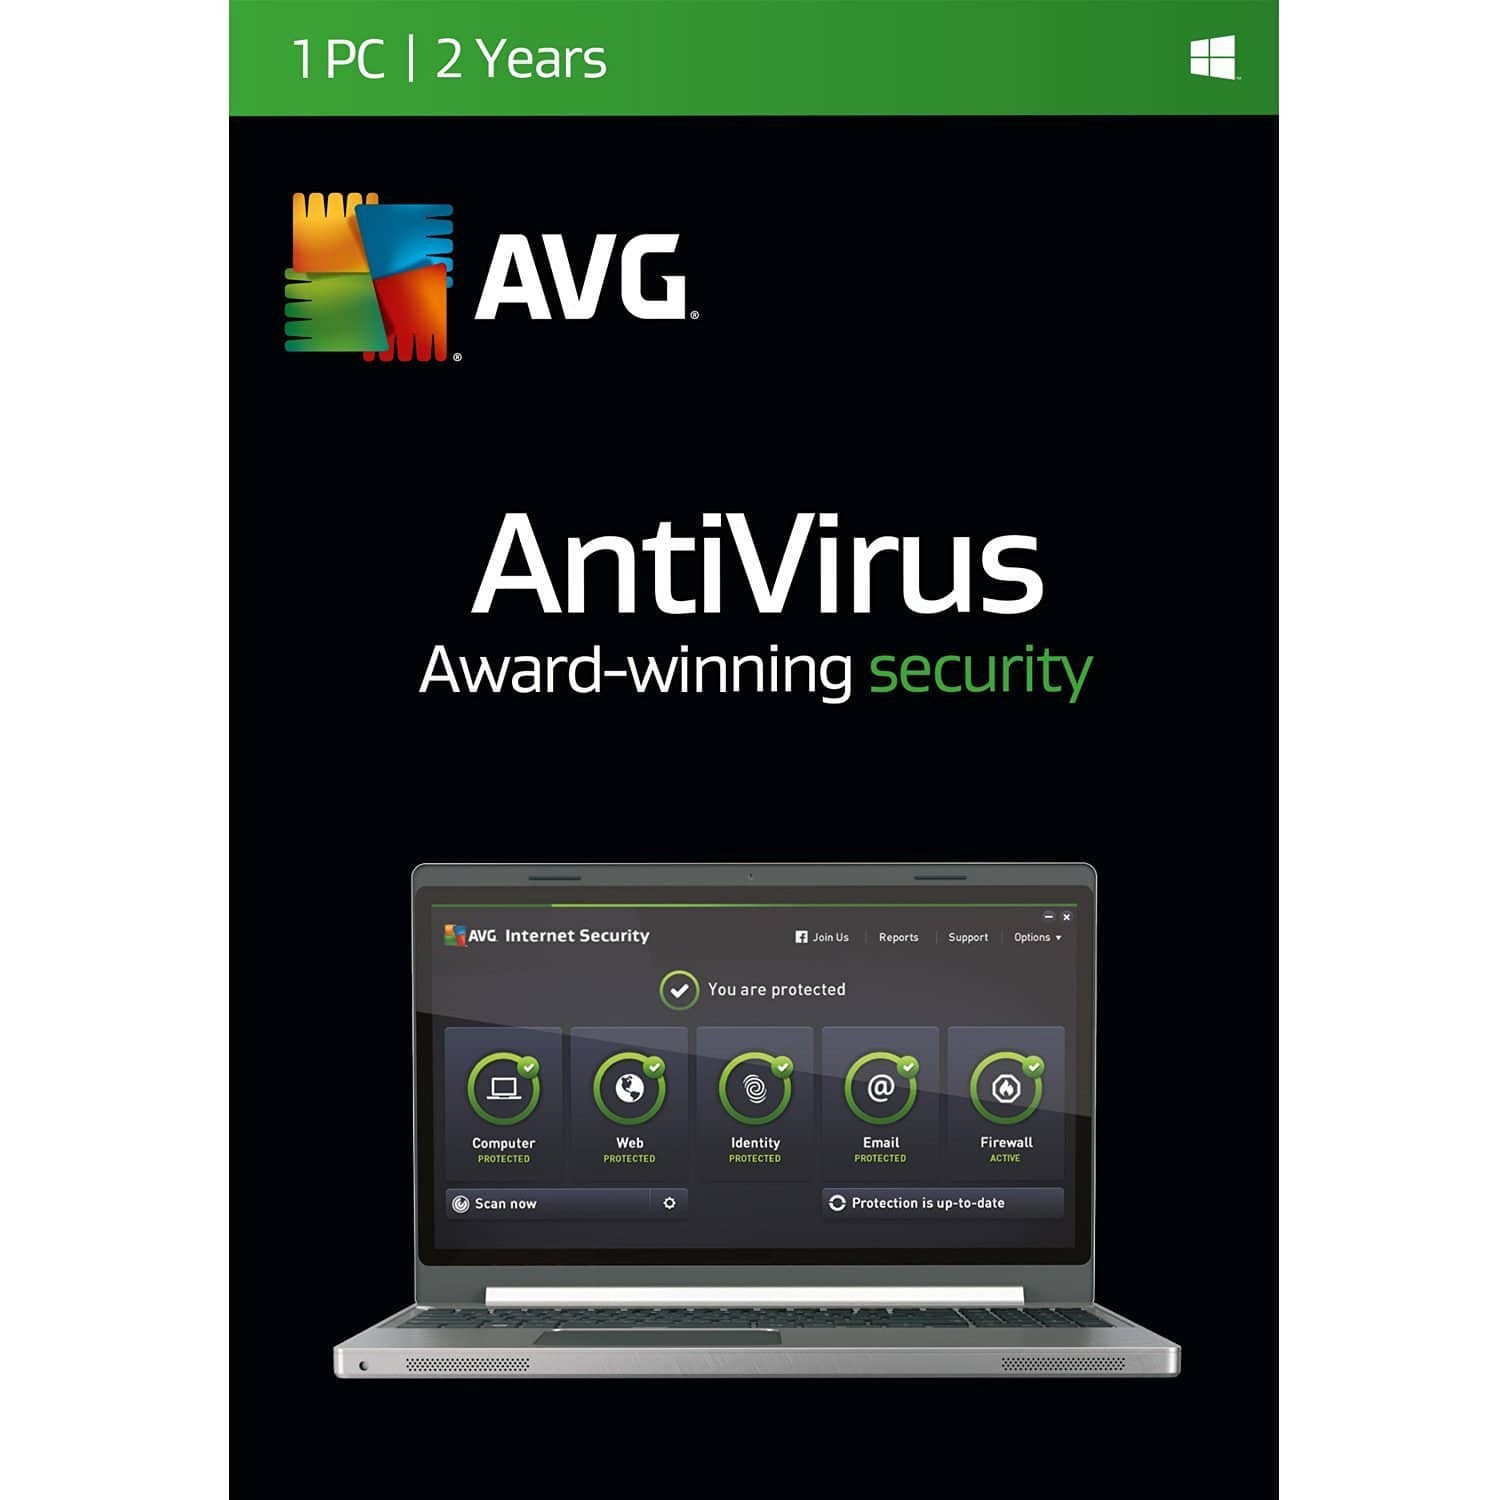 AVG Antivirus | 1 PC | 2 Years